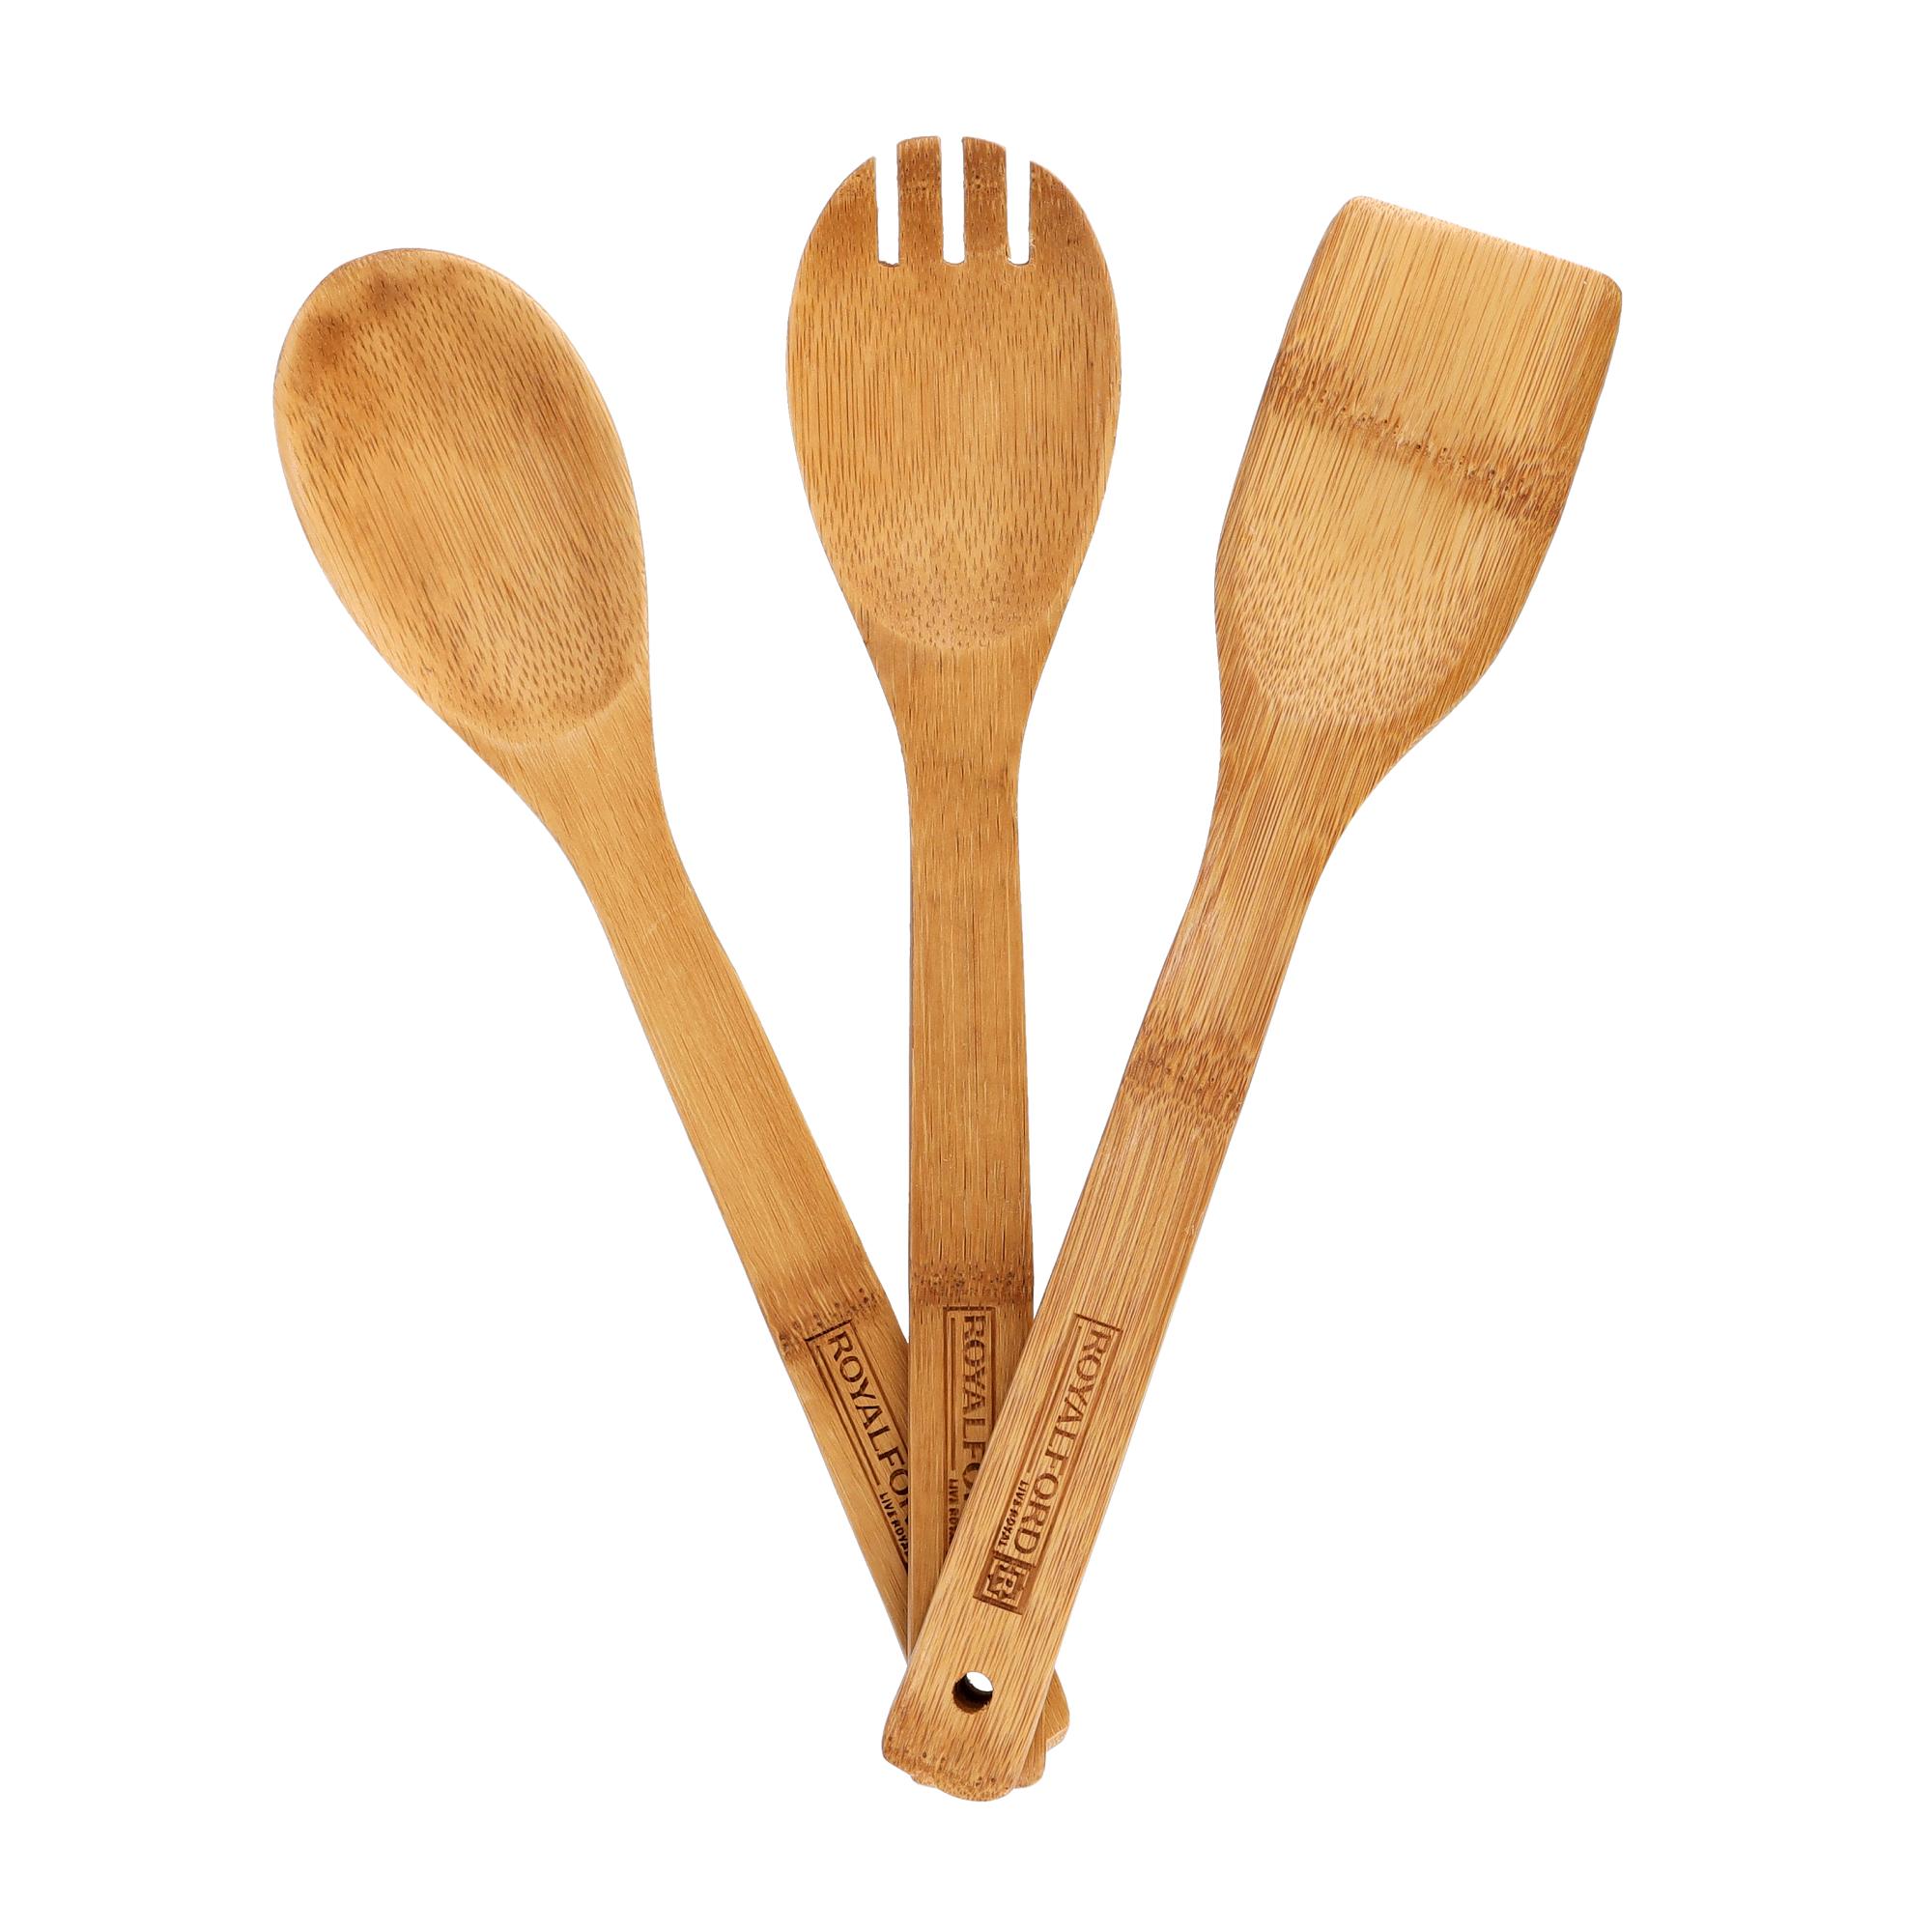 طقم أدوات مطبخ خشبية 3 قطع Royalford - 3 Pcs Bamboo Kitchen Tools Set